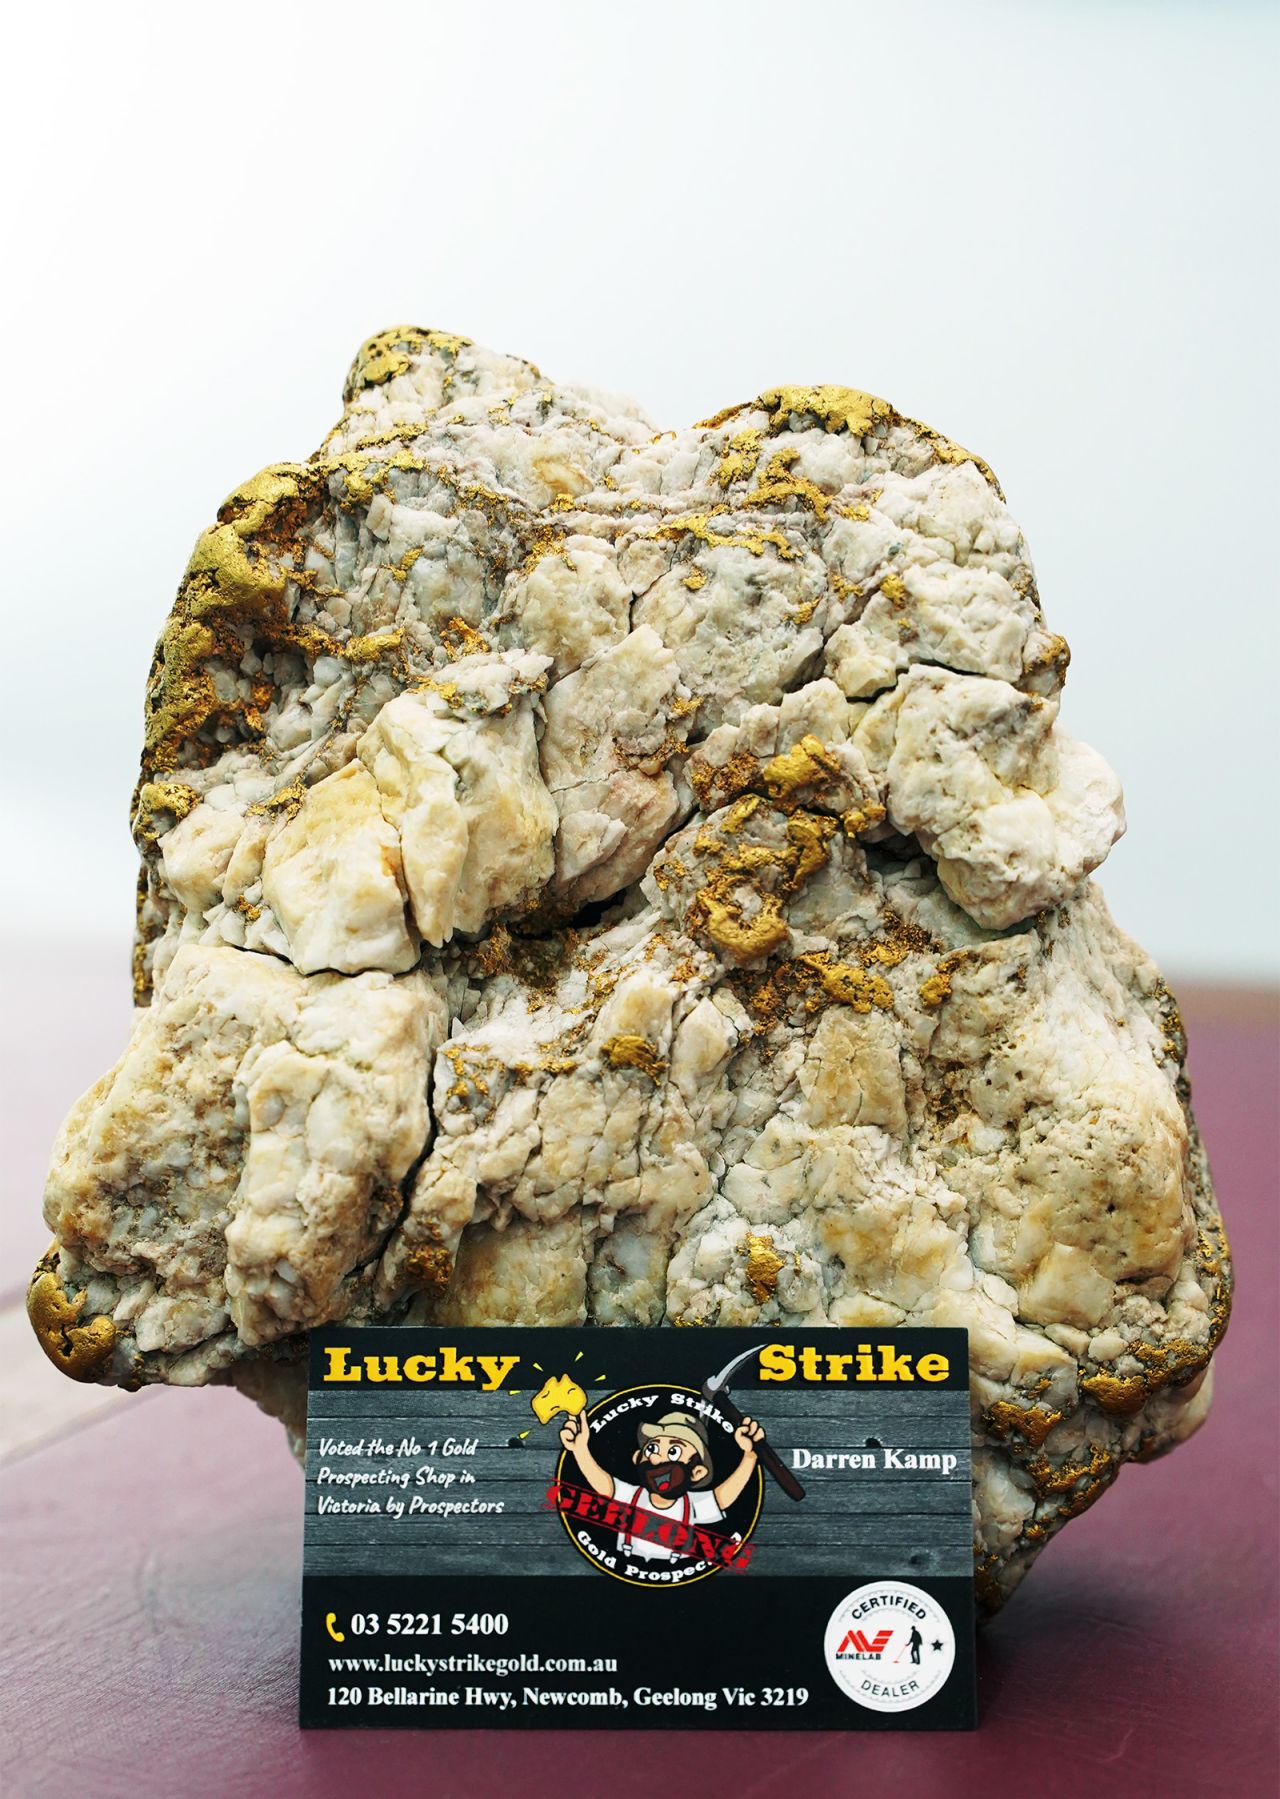 La roca llena de oro pesa 4,6 kilogramos (10,1 libras), y el metal precioso constituye 2,6 kilogramos (5,7 libras).